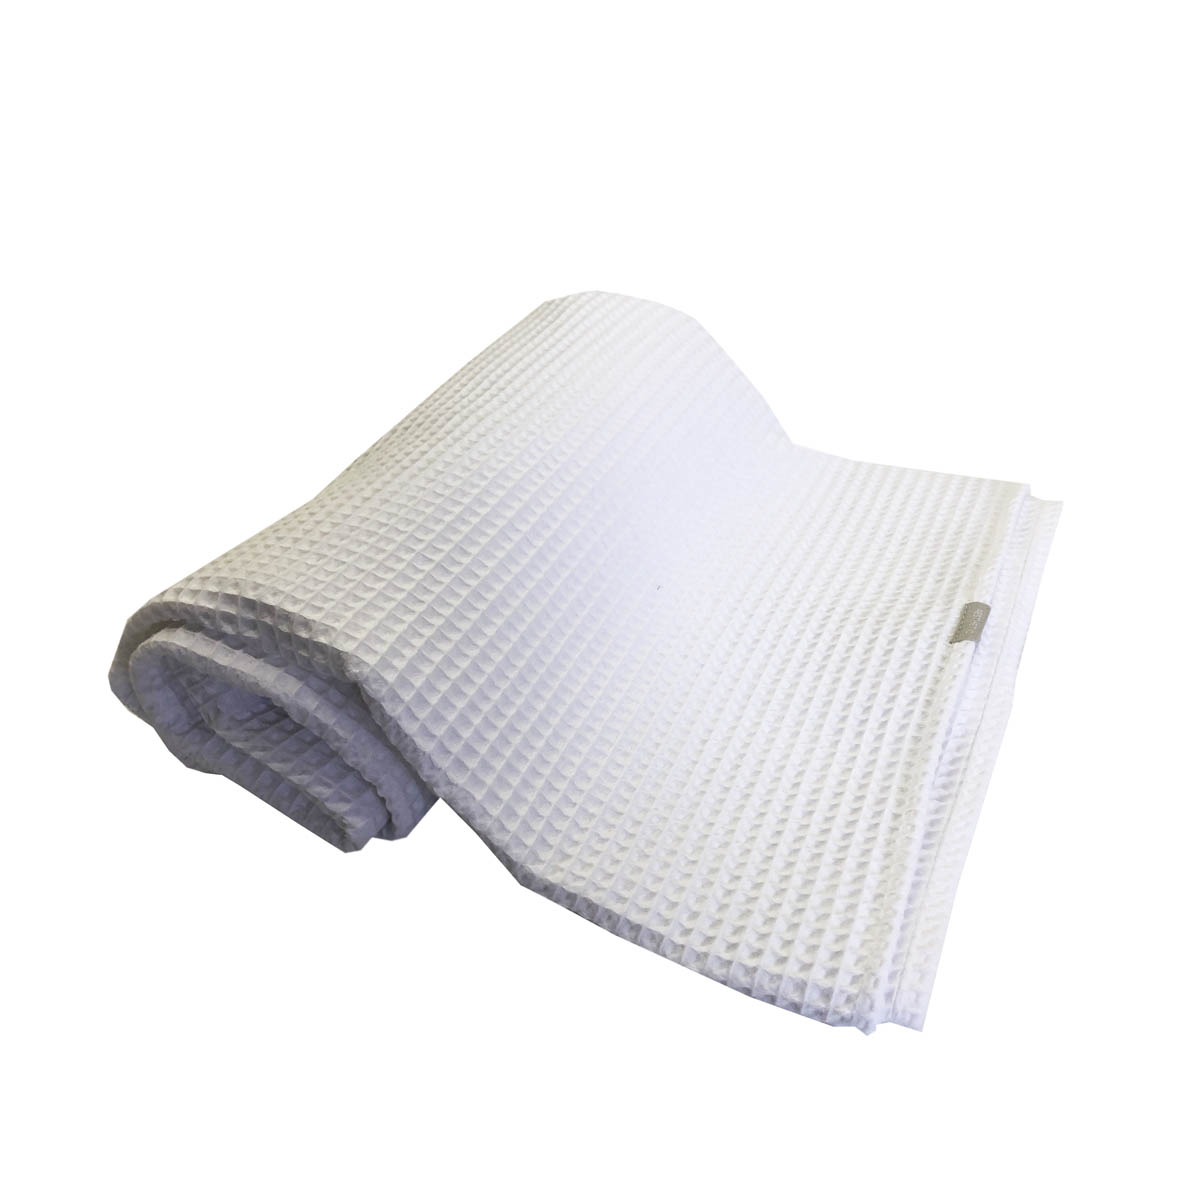 Vaflová deka letní / přehoz - Bílá (White) - 150x200cm